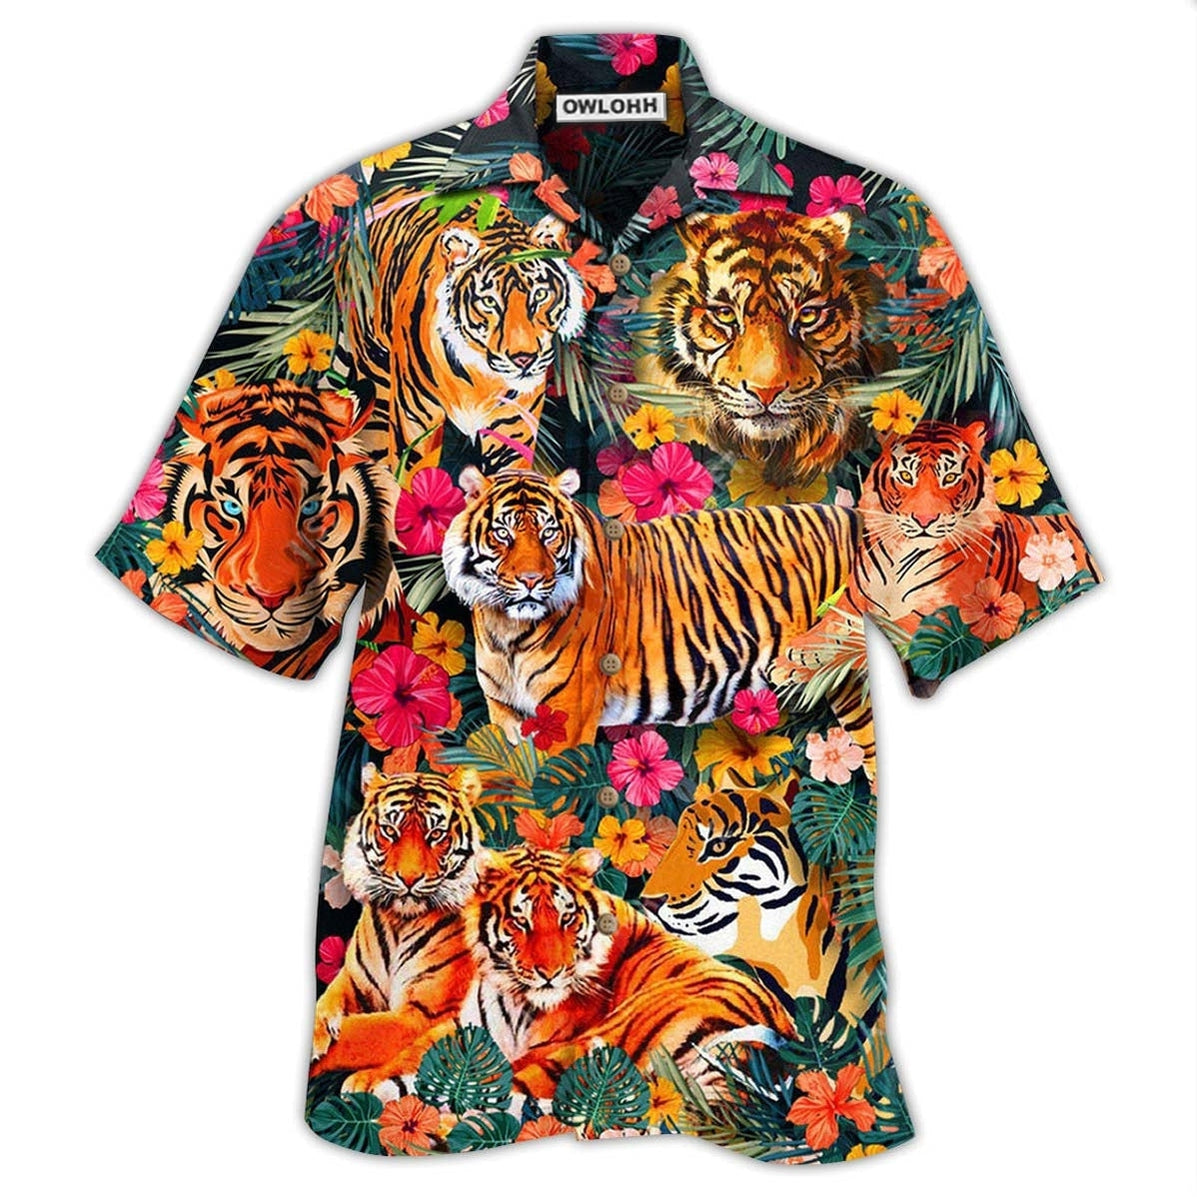 Tiger Be A Jungle Tiger Not A Zoo Tiger - Hawaiian Shirt - Owls Matrix LTD